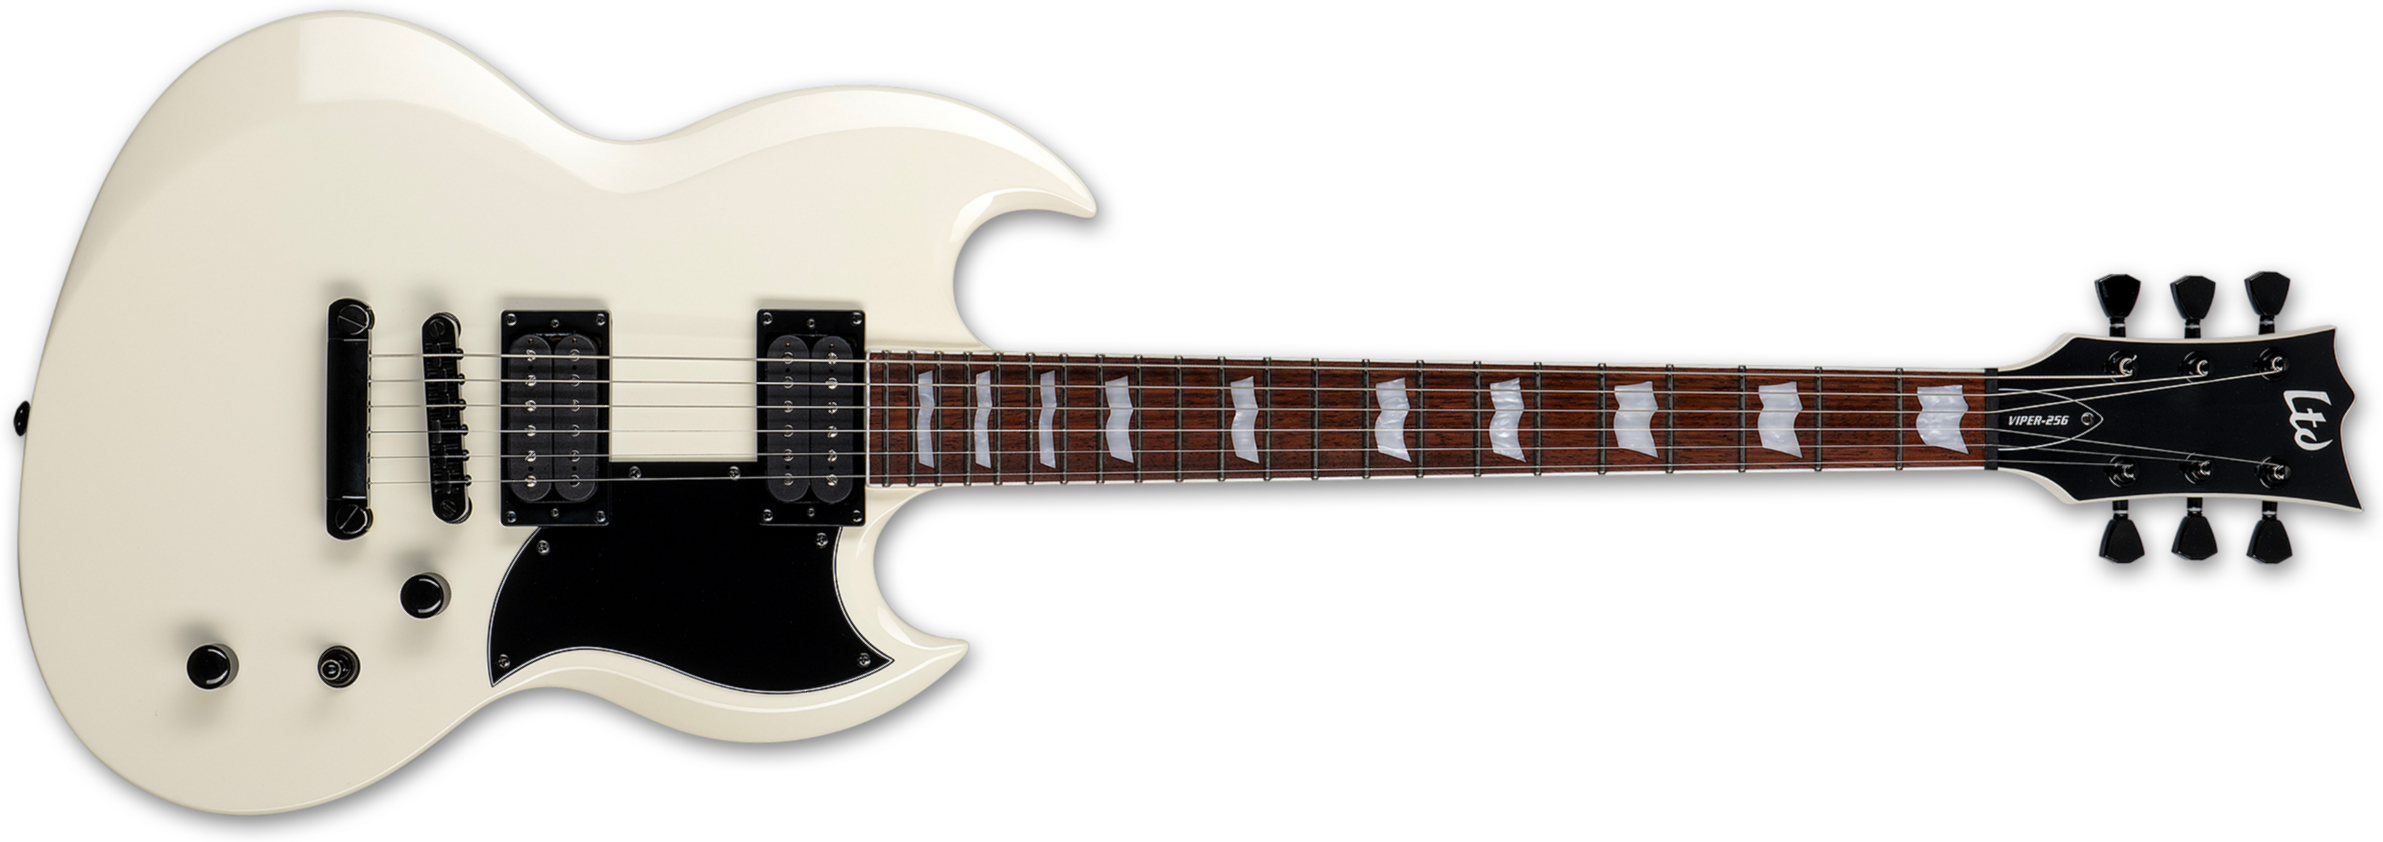 Ltd Viper-256 Hh Jat - Olympic White - Guitarra electrica metalica - Main picture